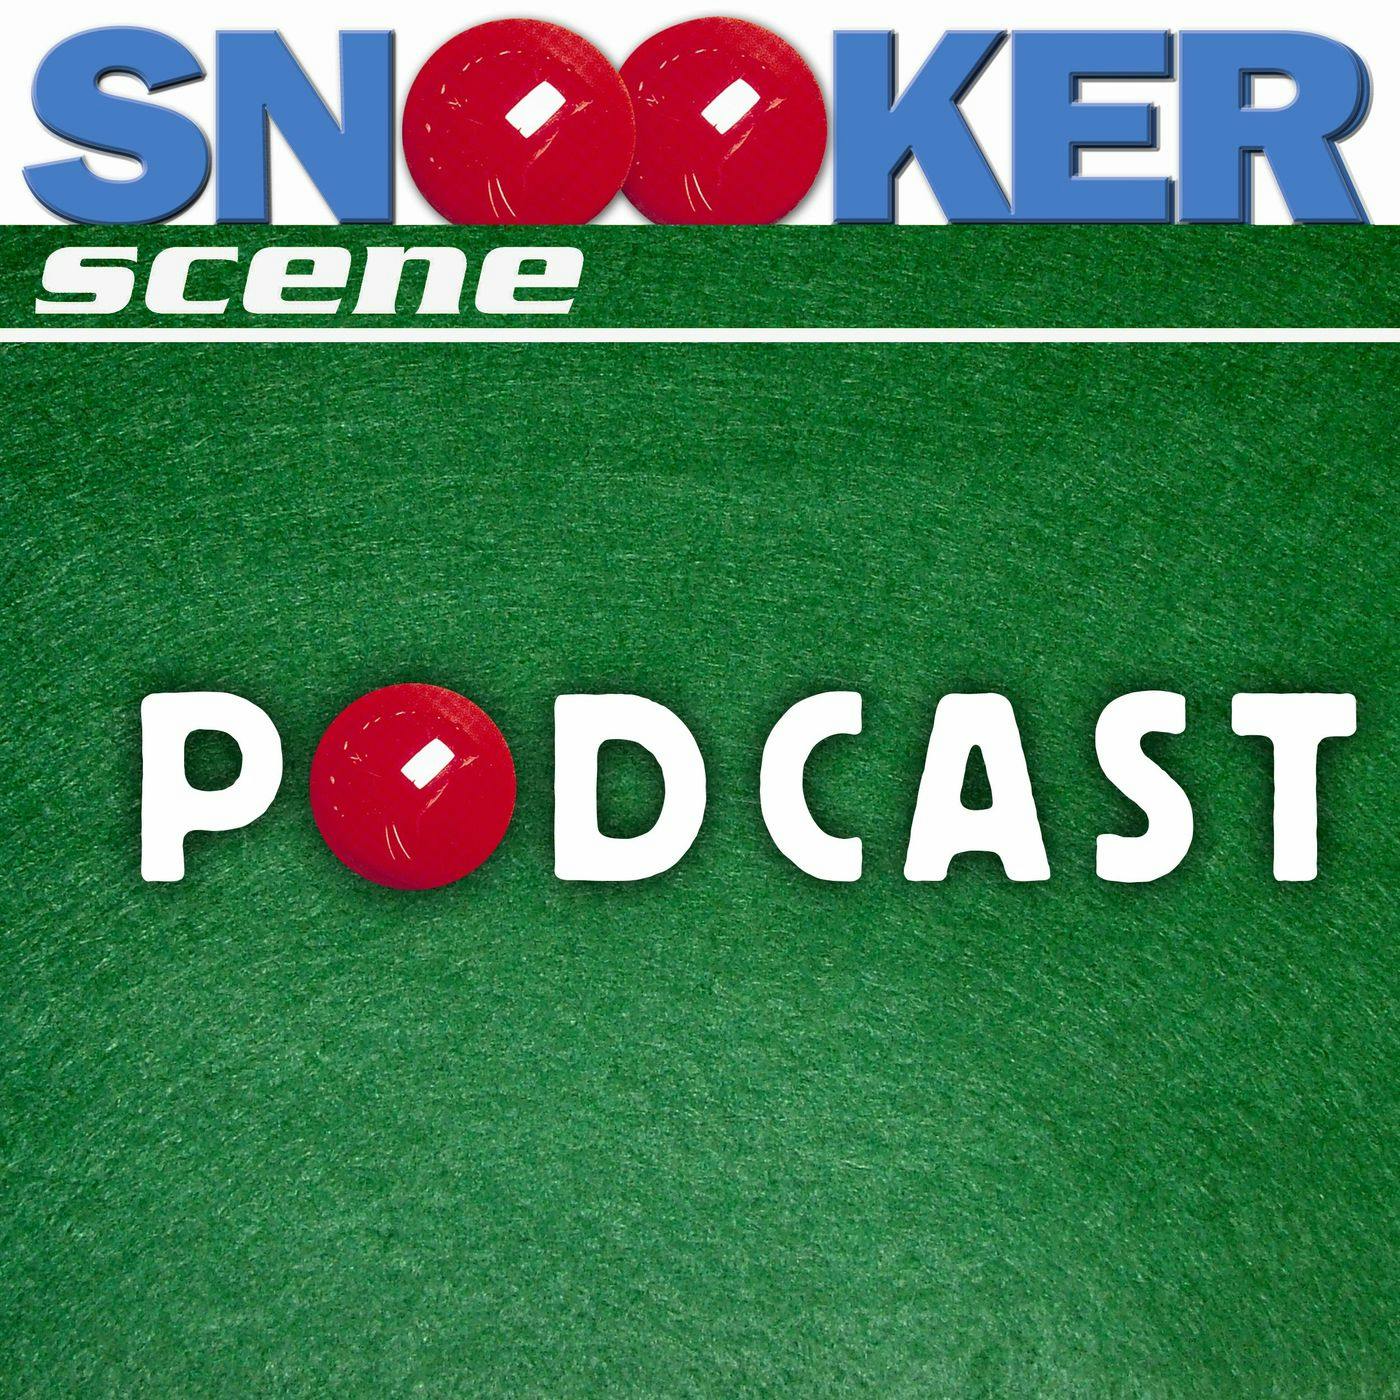 Snooker Scene Podcast episode 162 - Snooker in the Media